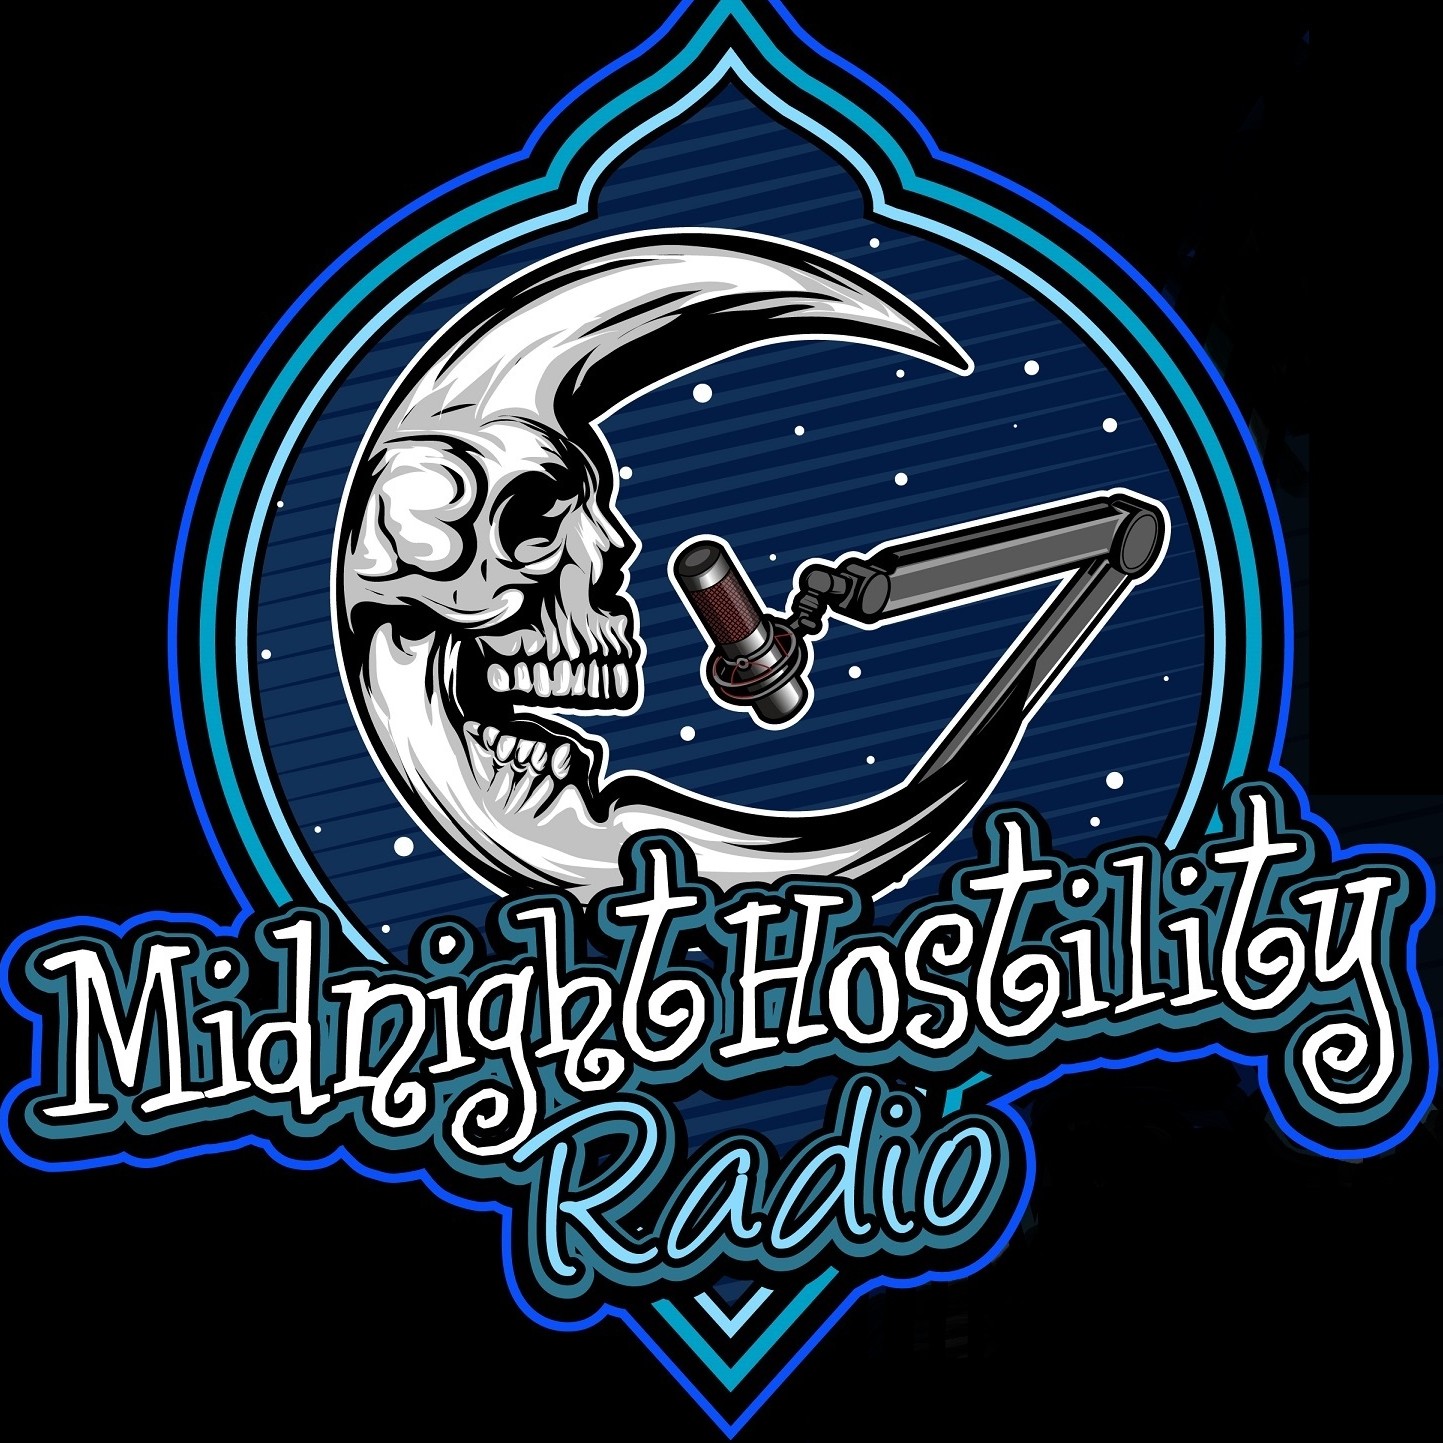 Midnight Hostility Radio